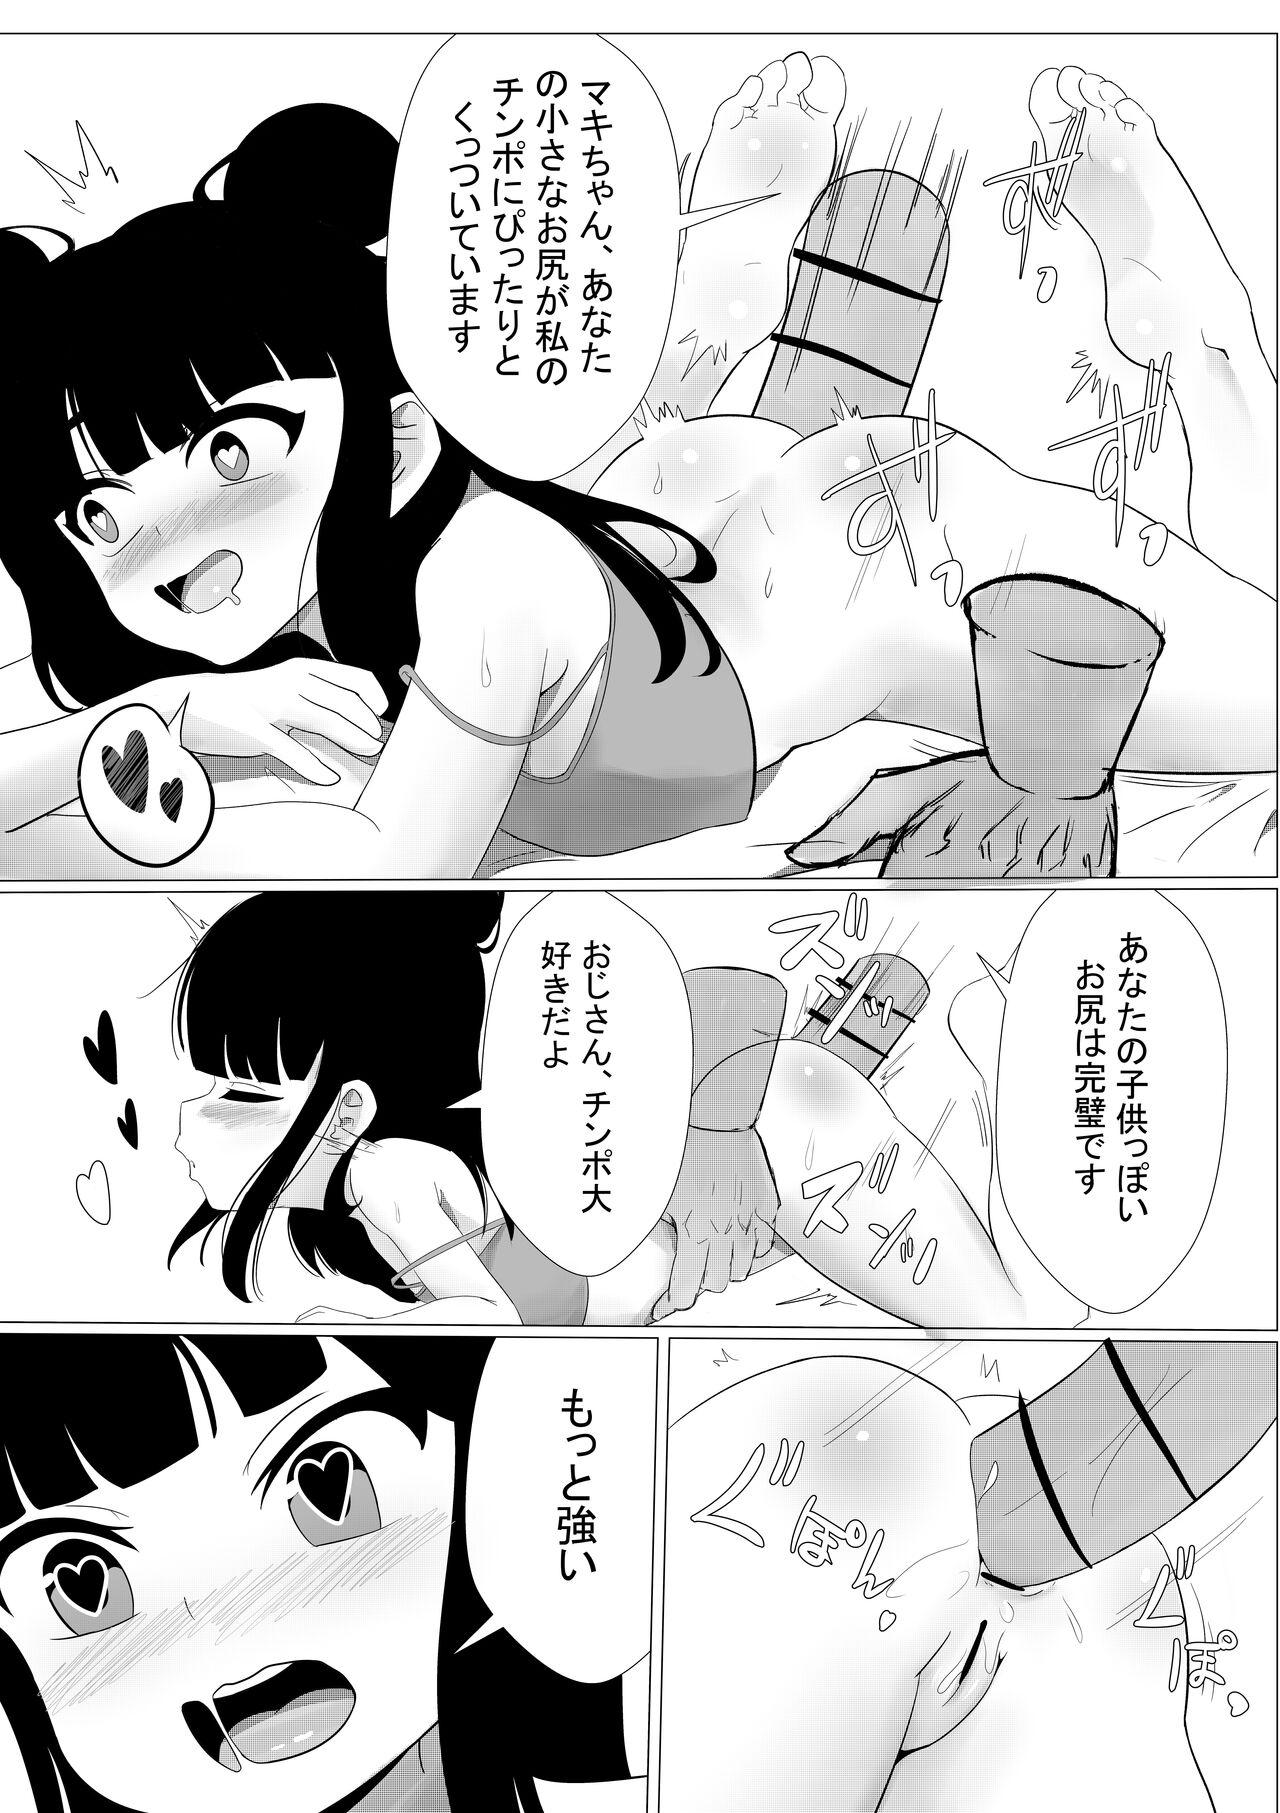 Maki-chan wa Anata ni Issho ni Asonde Hoshii to Omotte Imasu. 7